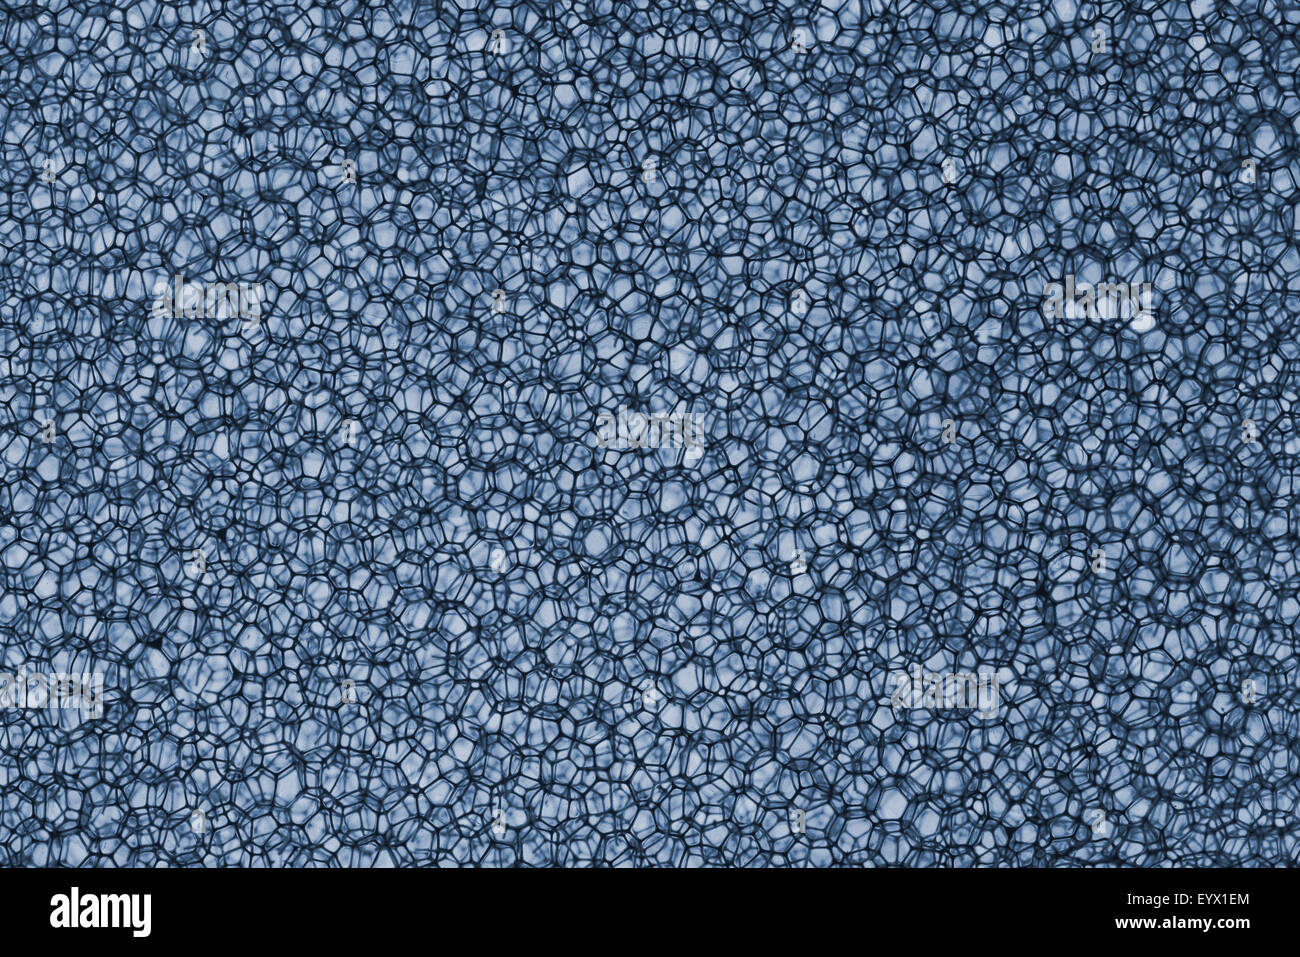 Background Of Sponge in Blue color shot in studio Stock Photo